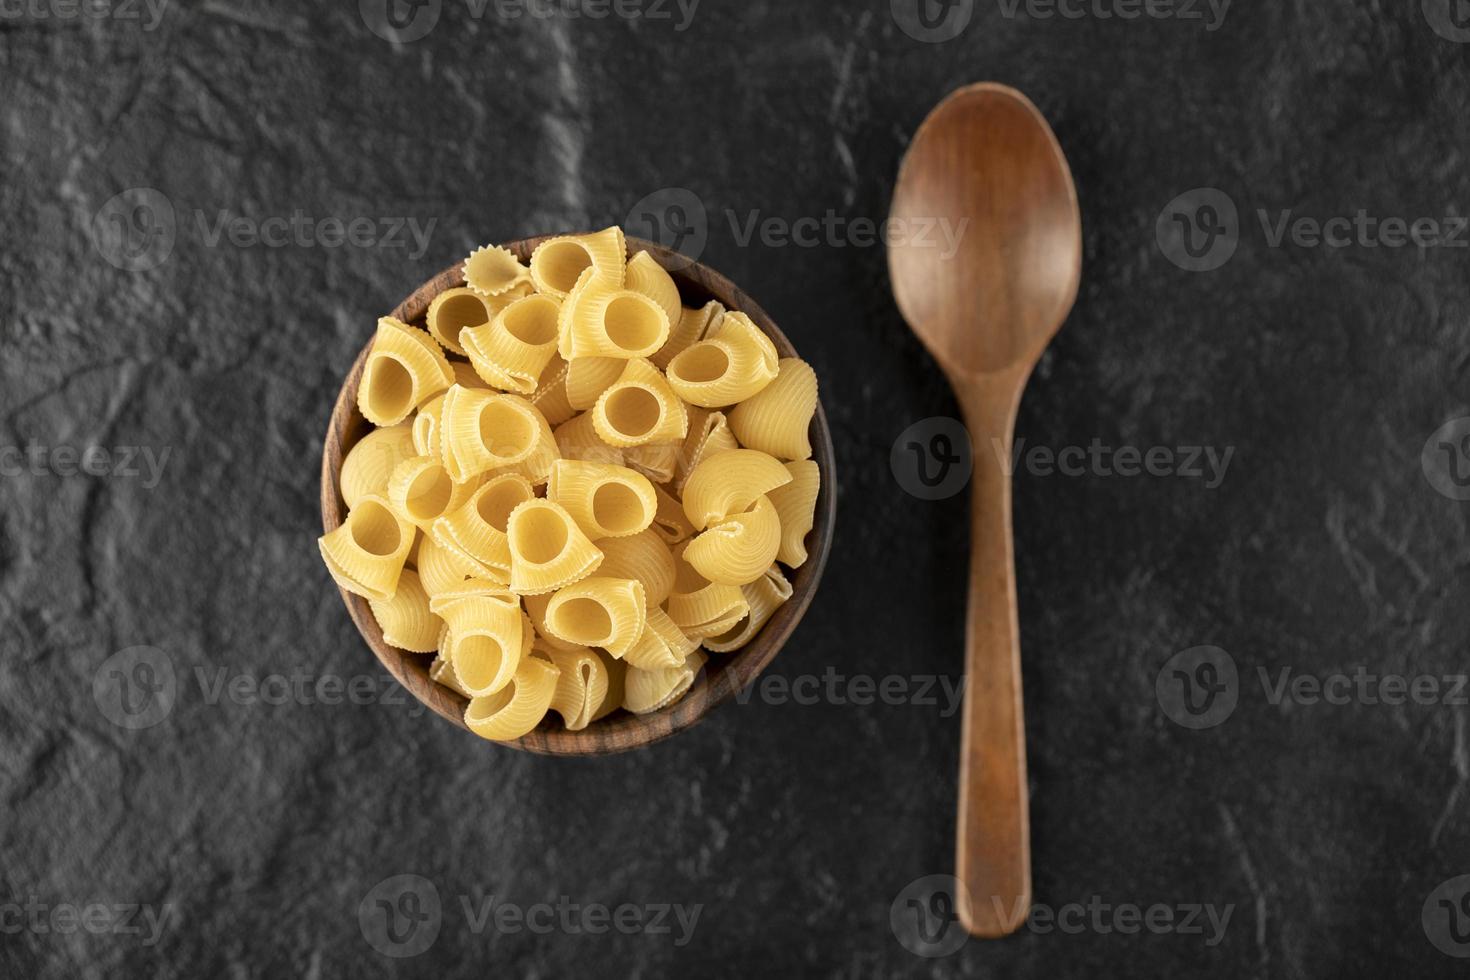 Conchiglie pasta cruda italiana en un recipiente de madera con una cuchara de madera foto